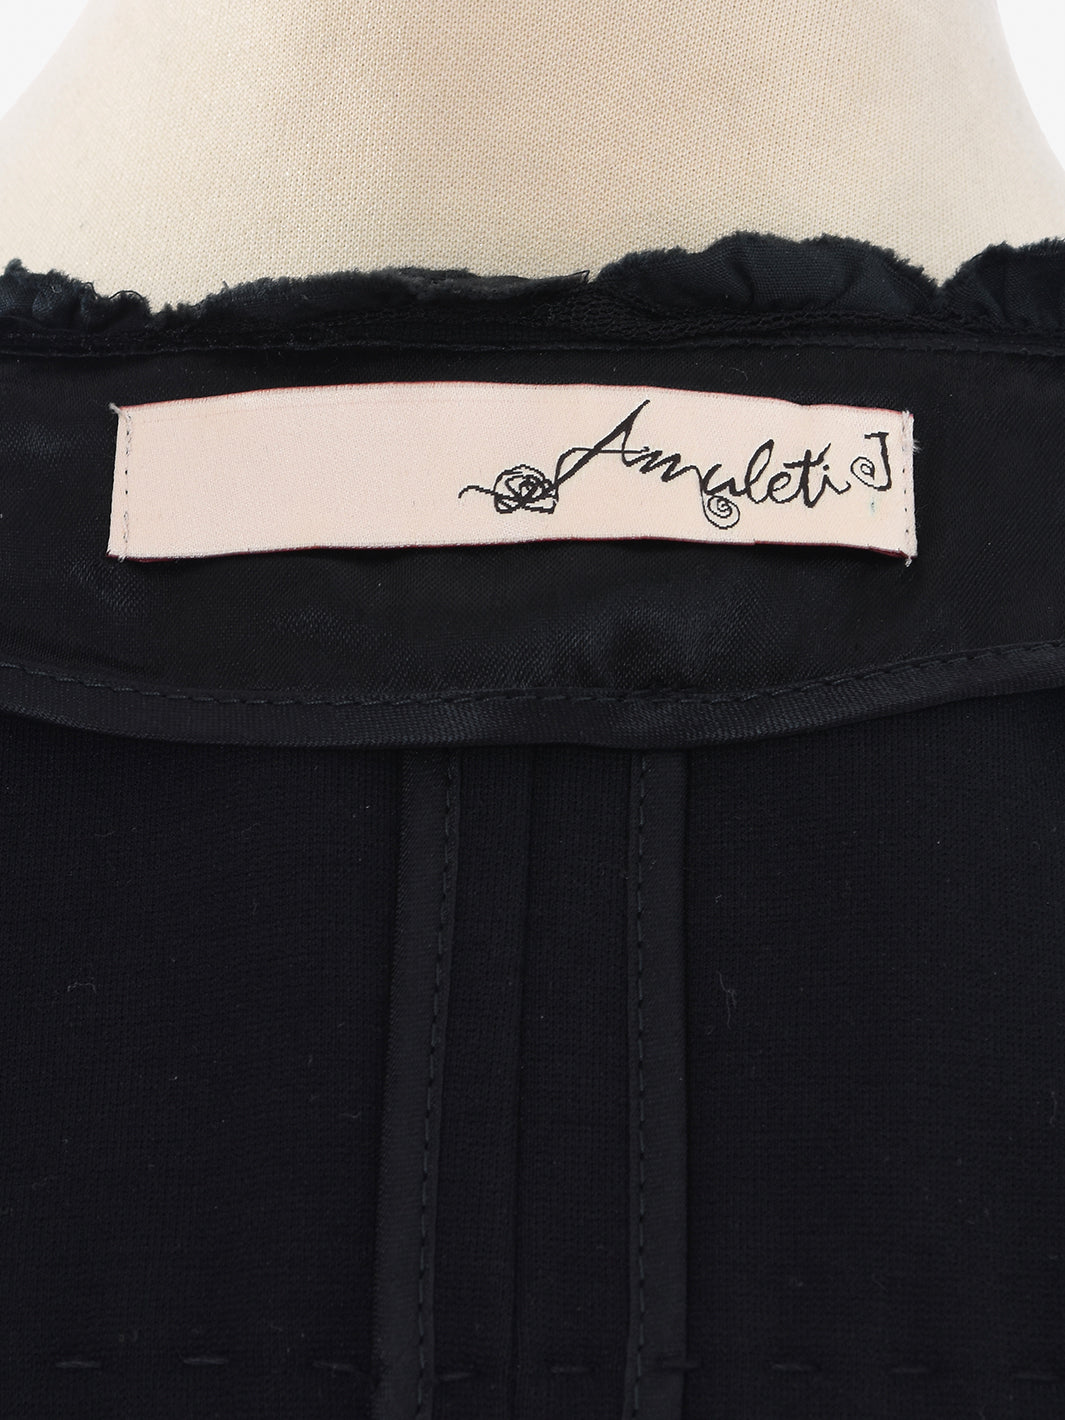 Amuleti viscose jacket black color